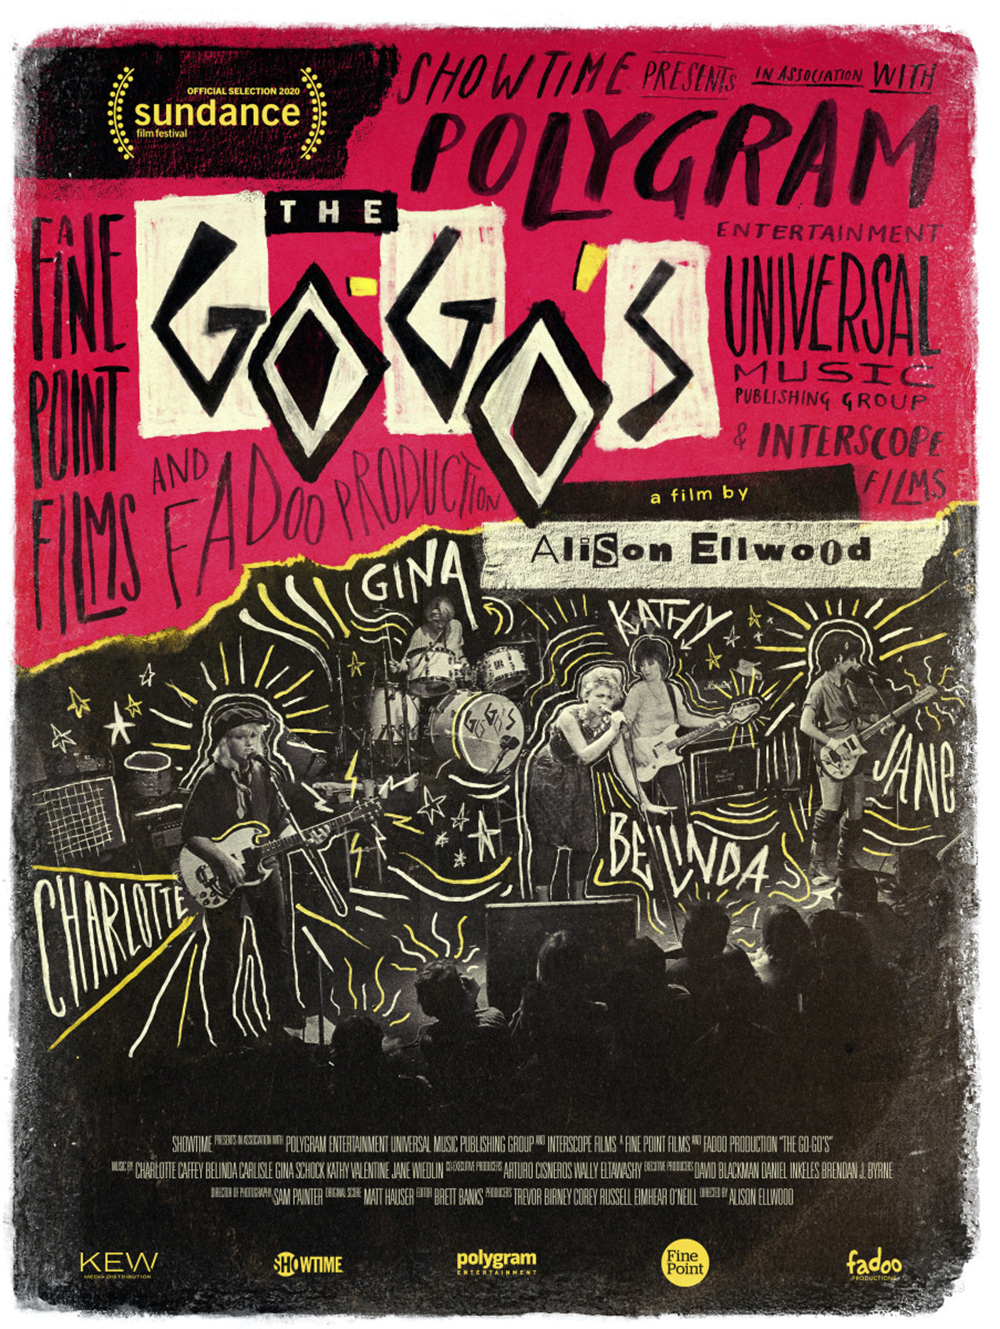 THE GO-GO’S documentary